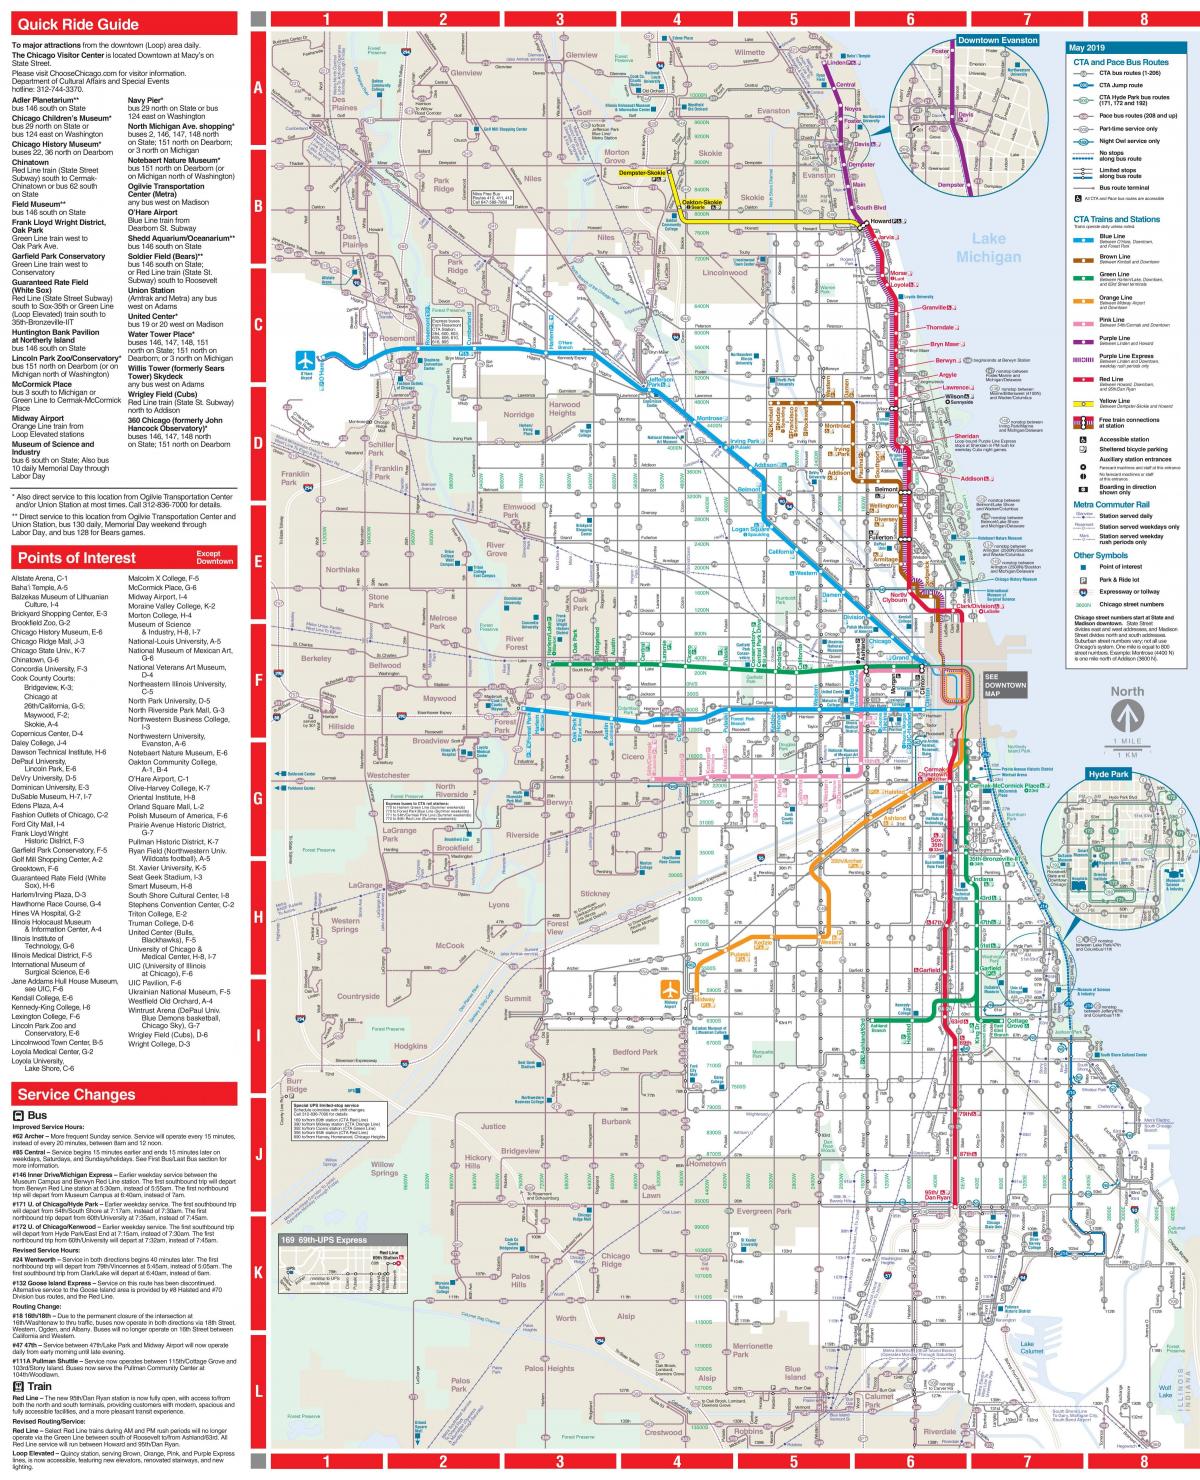 Plan des stations bus de Chicago